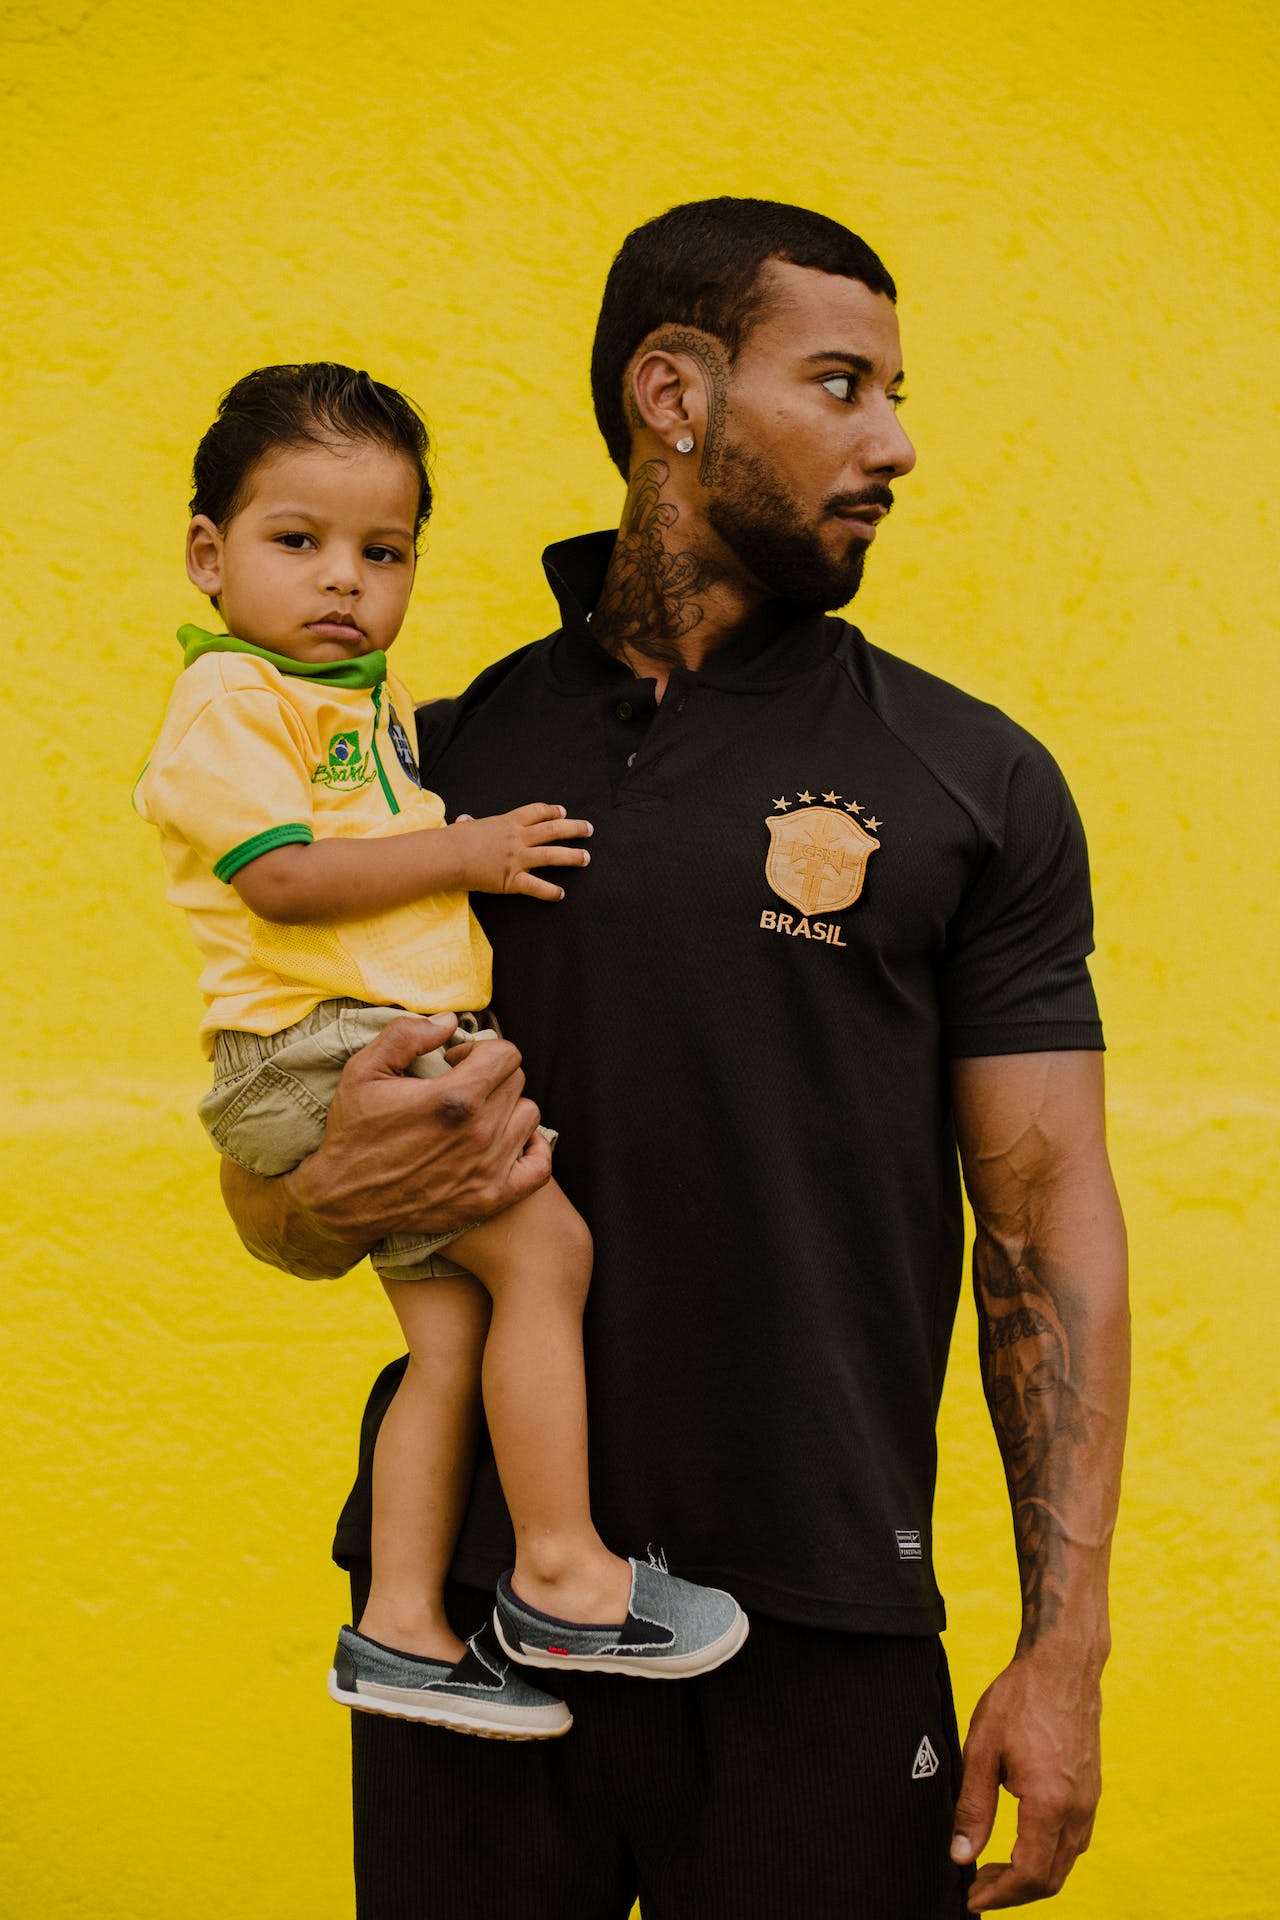 Pai segurando filho no colo. Ambos usam camisas da Seleção Brasileira de Futebol